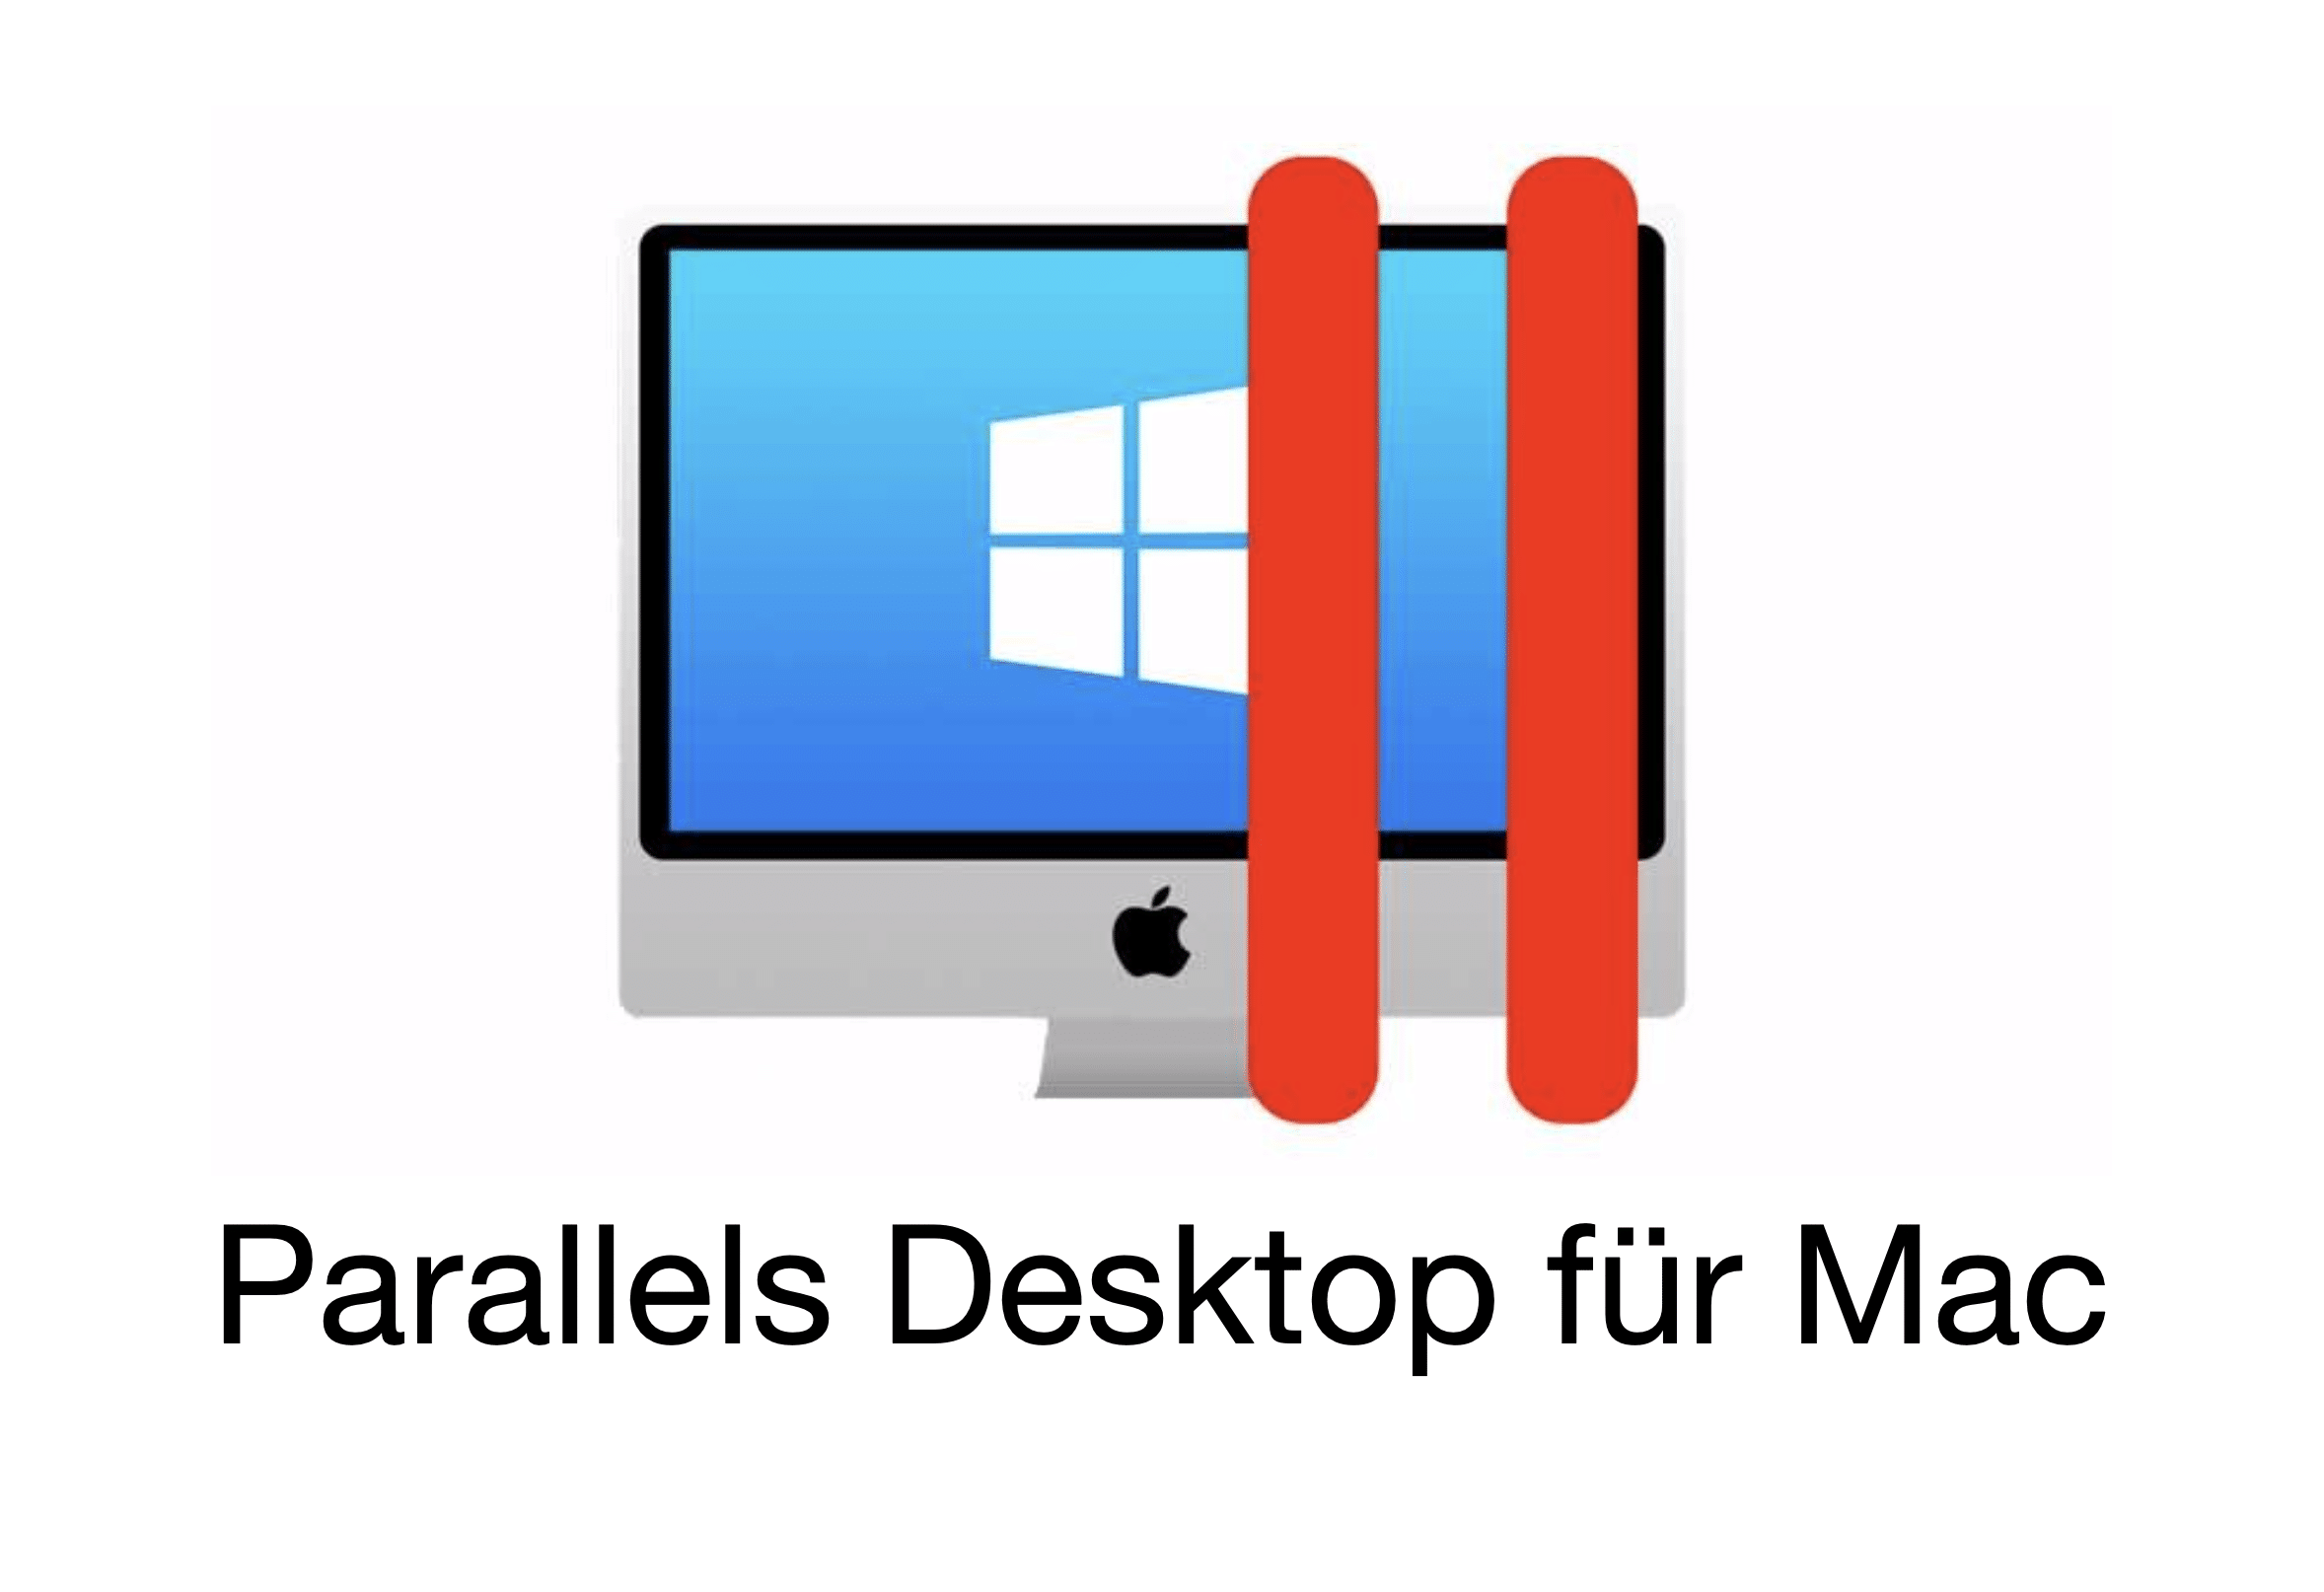 parallels desktop price